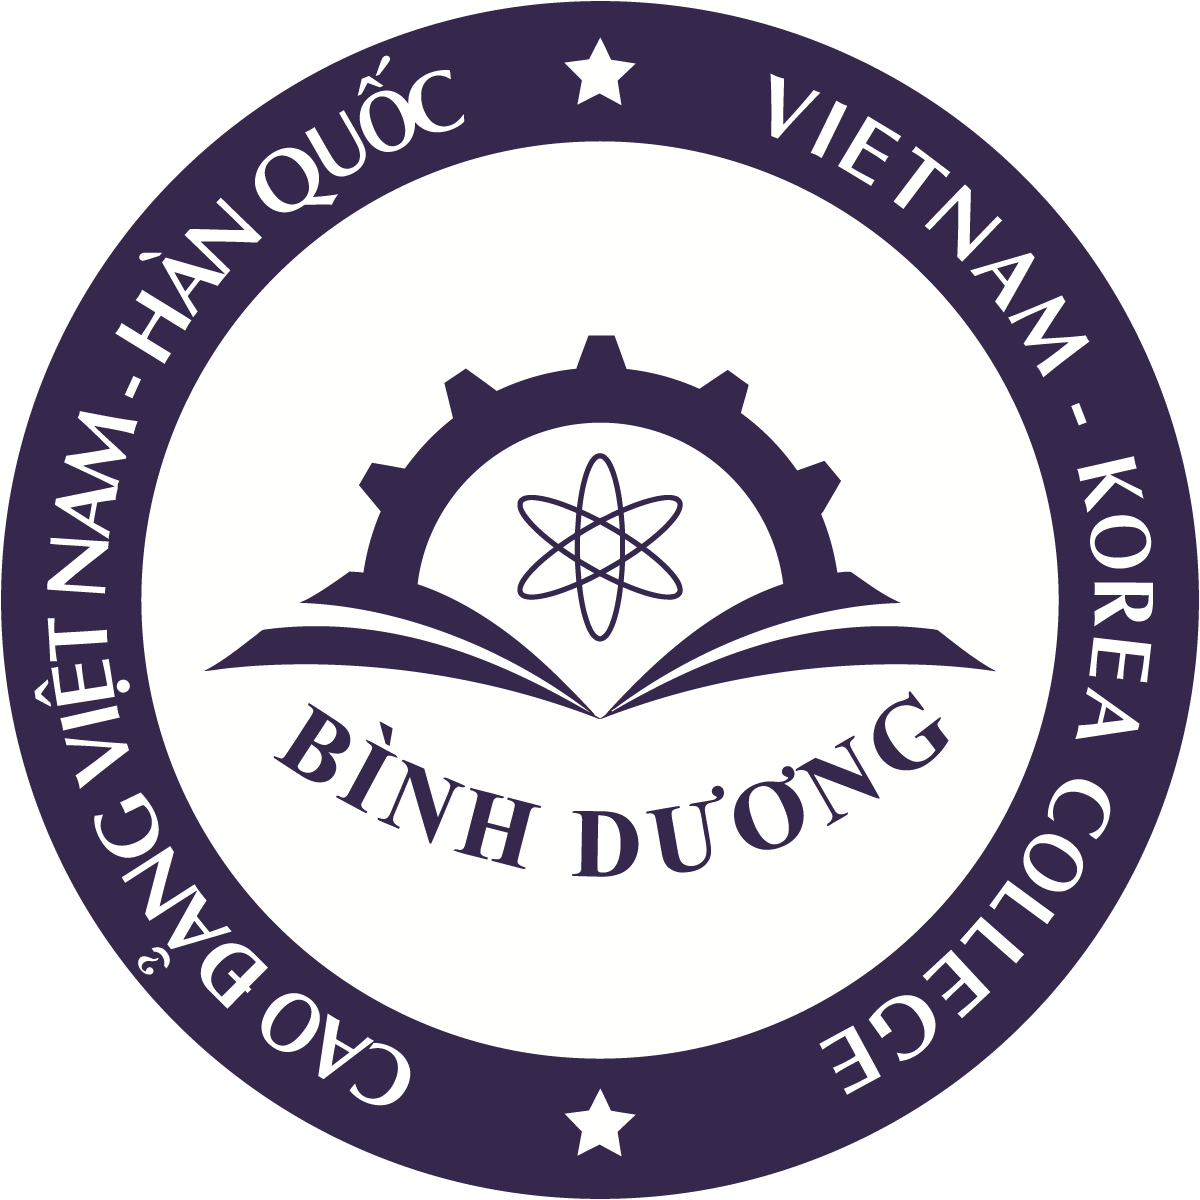 Logo Truong Cao dang Viet Nam Han Quoc Binh Duong